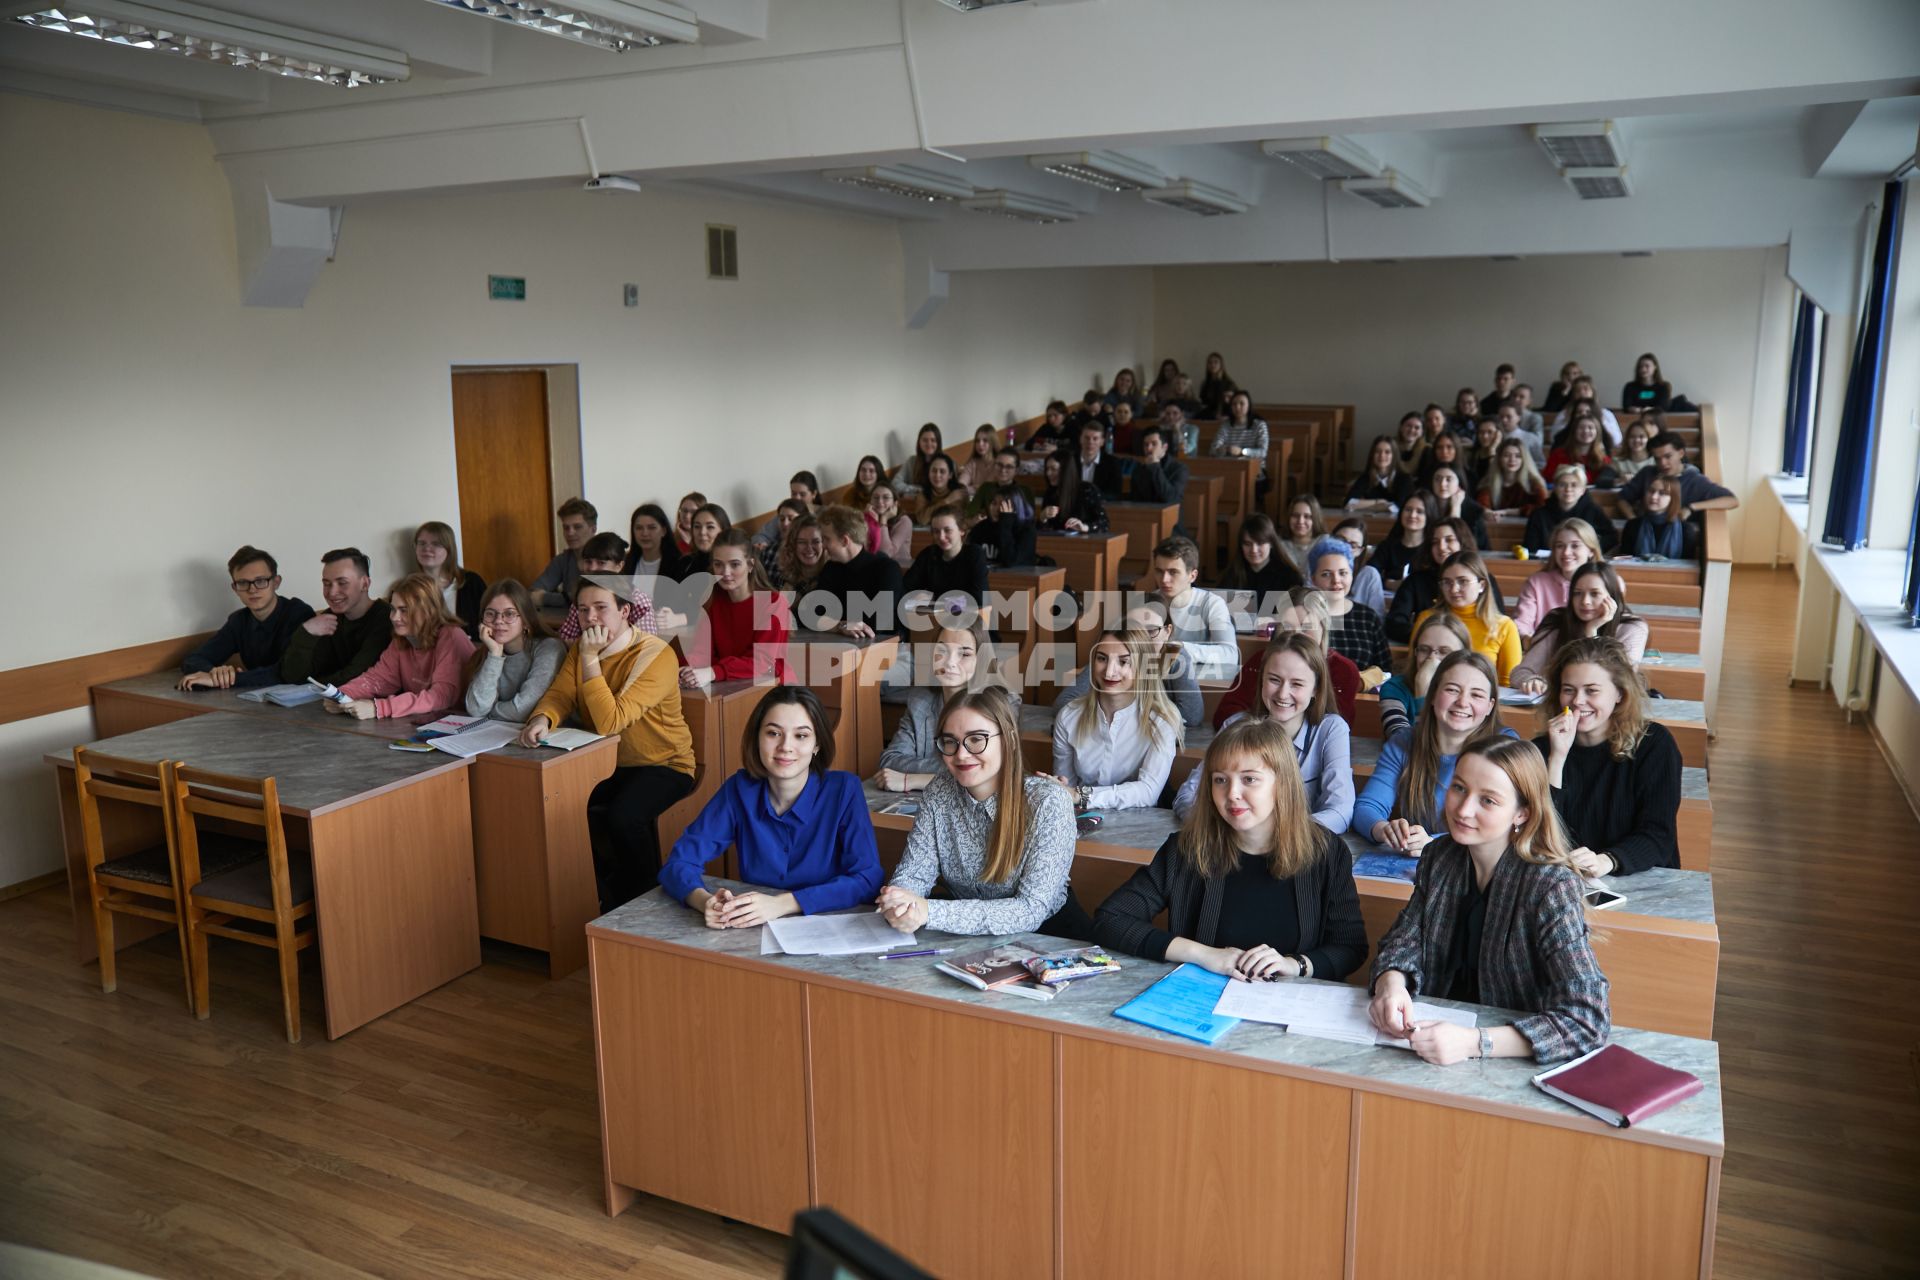 Белоруссия. Минск. Студенты на лекции в аудитории.